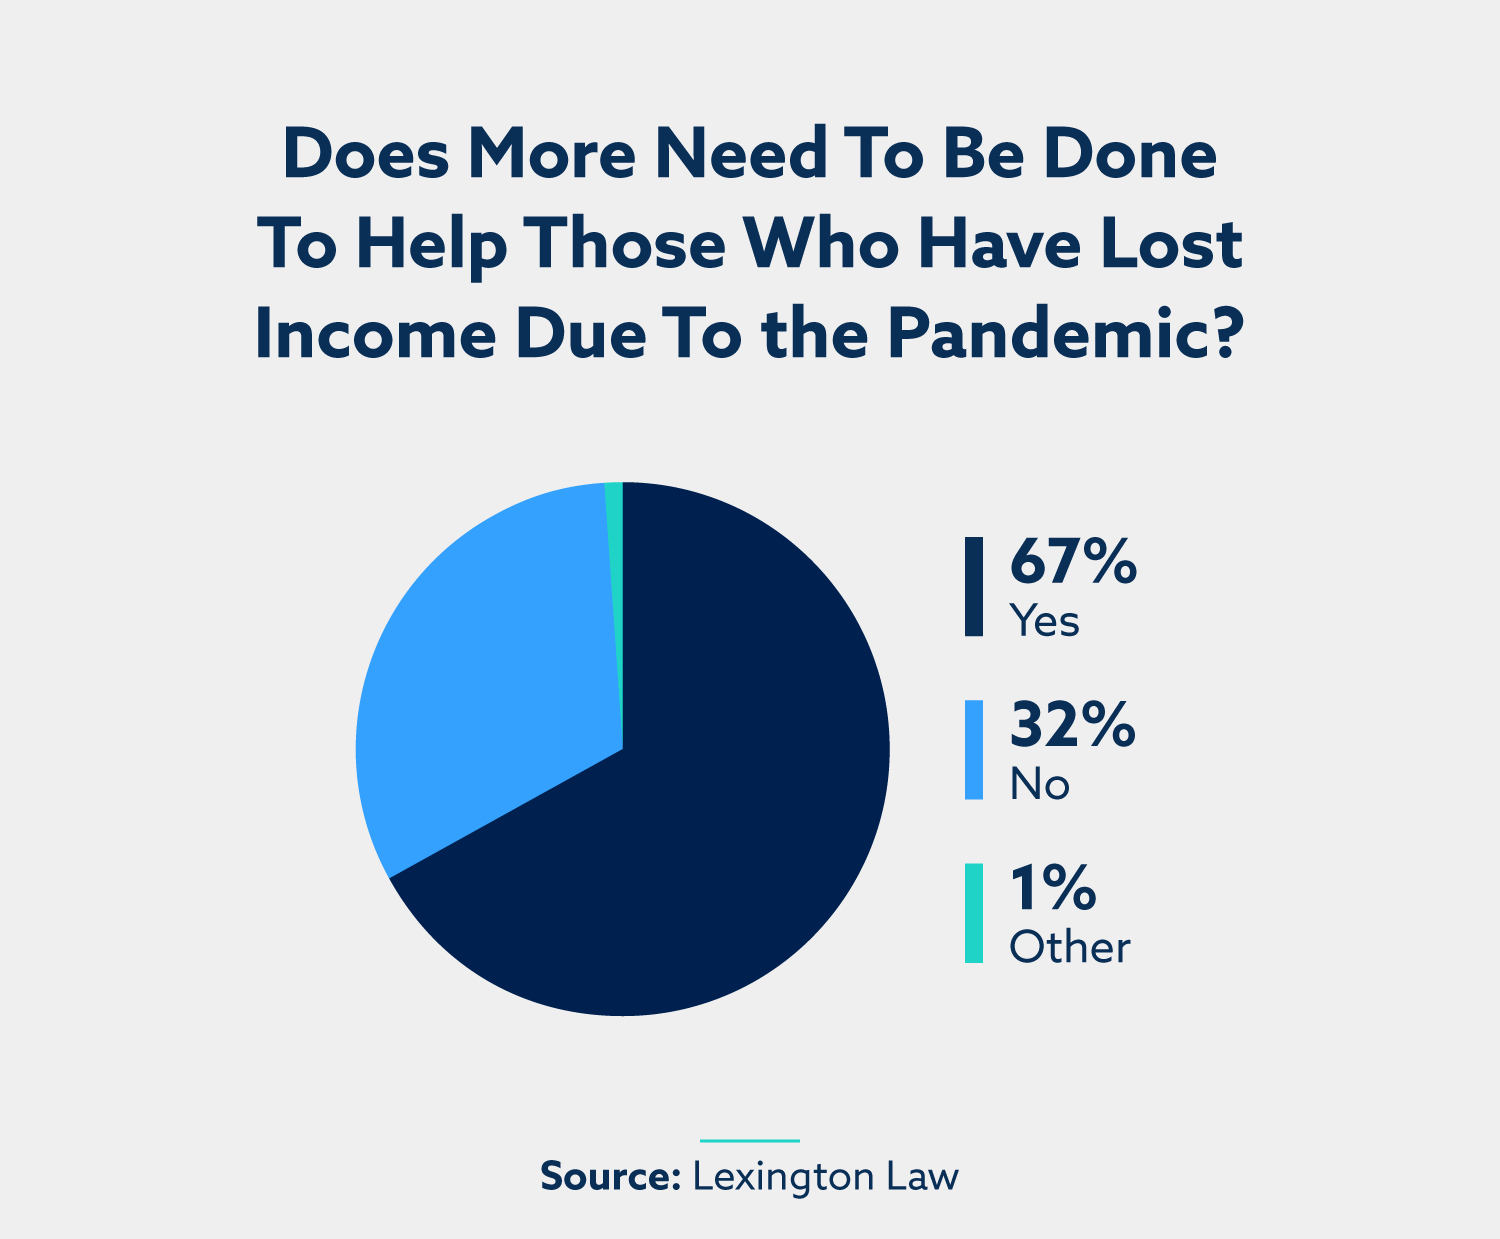 ¿Es necesario hacer más para ayudar a quienes han perdido ingresos debido a la pandemia? Resultados de la encuesta de Lexington Law: Sí: 67%. No: 32%. Otro: 1%.